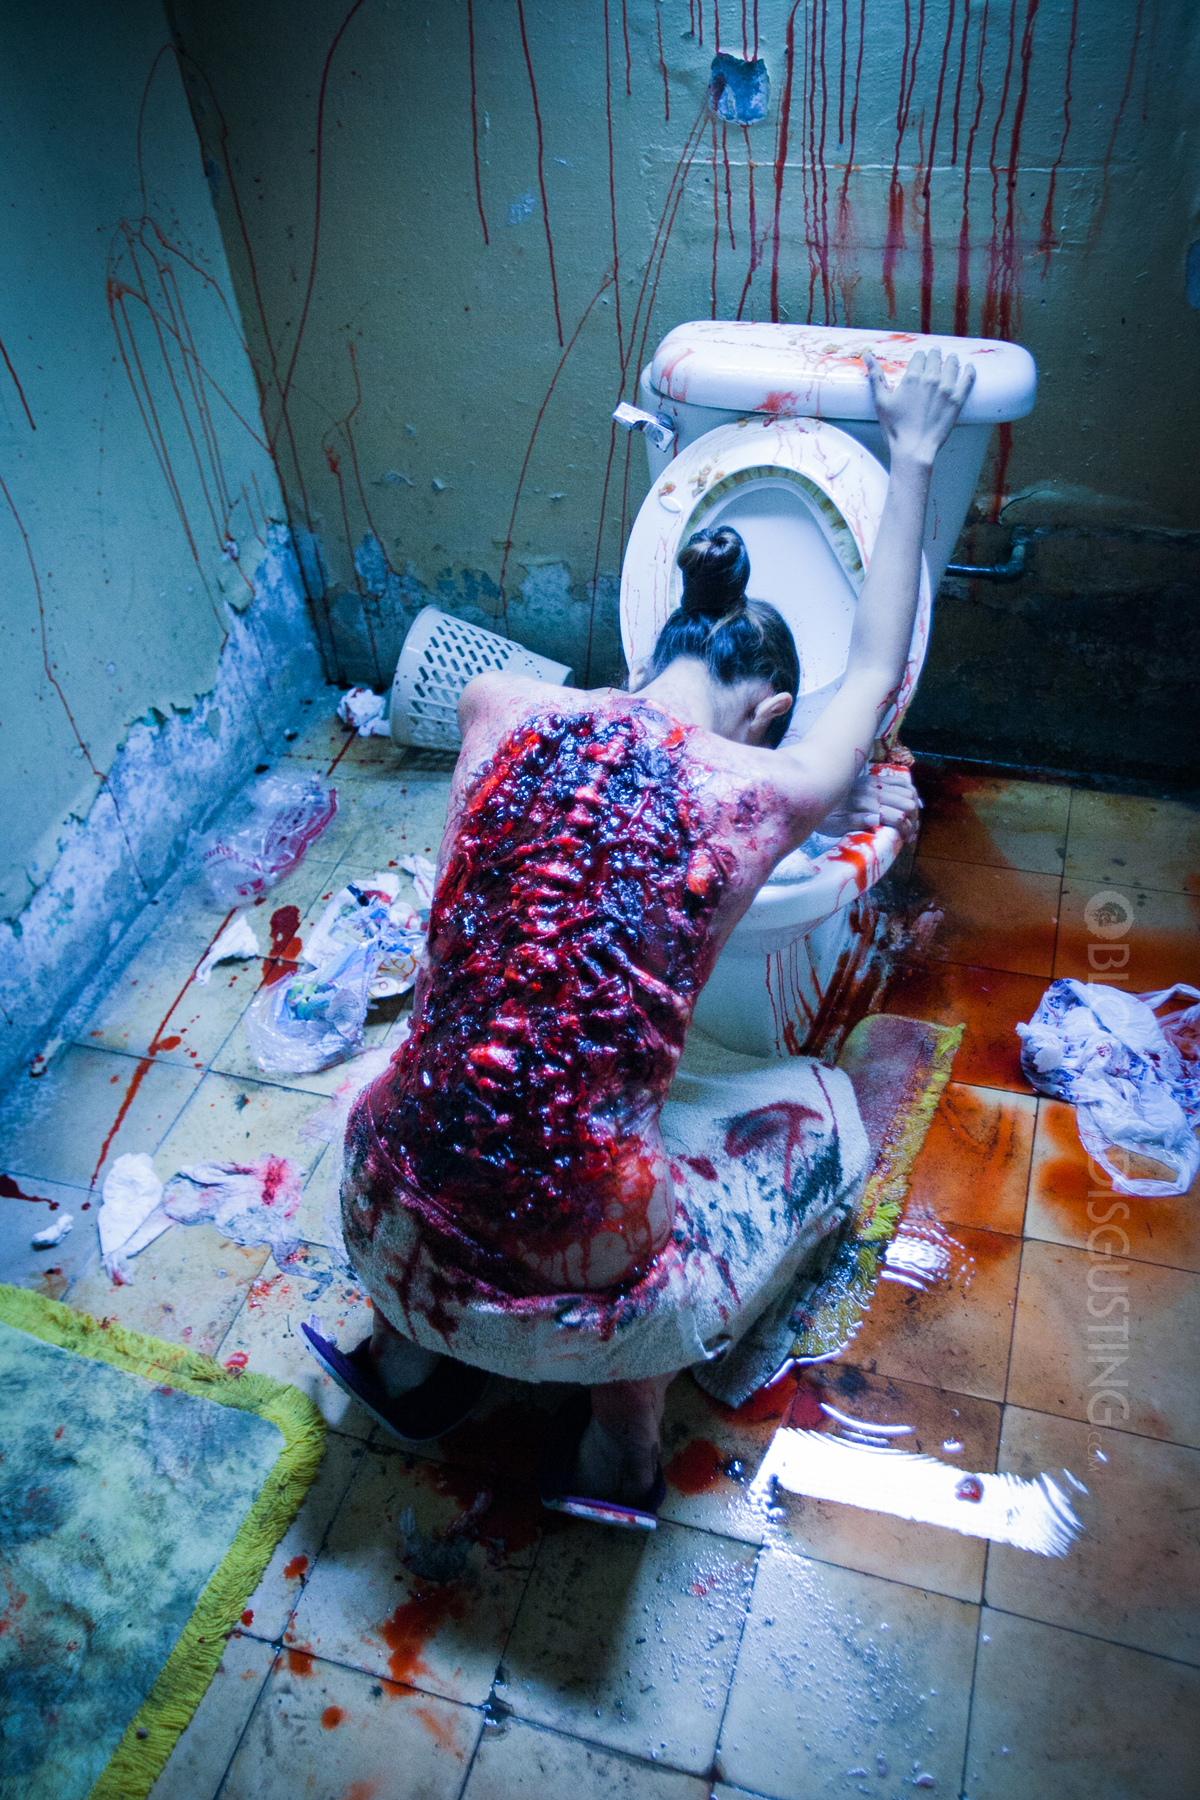 Meet 'Patient Zero' In New 'Cabin Fever' Trailer - Bloody Disgusting